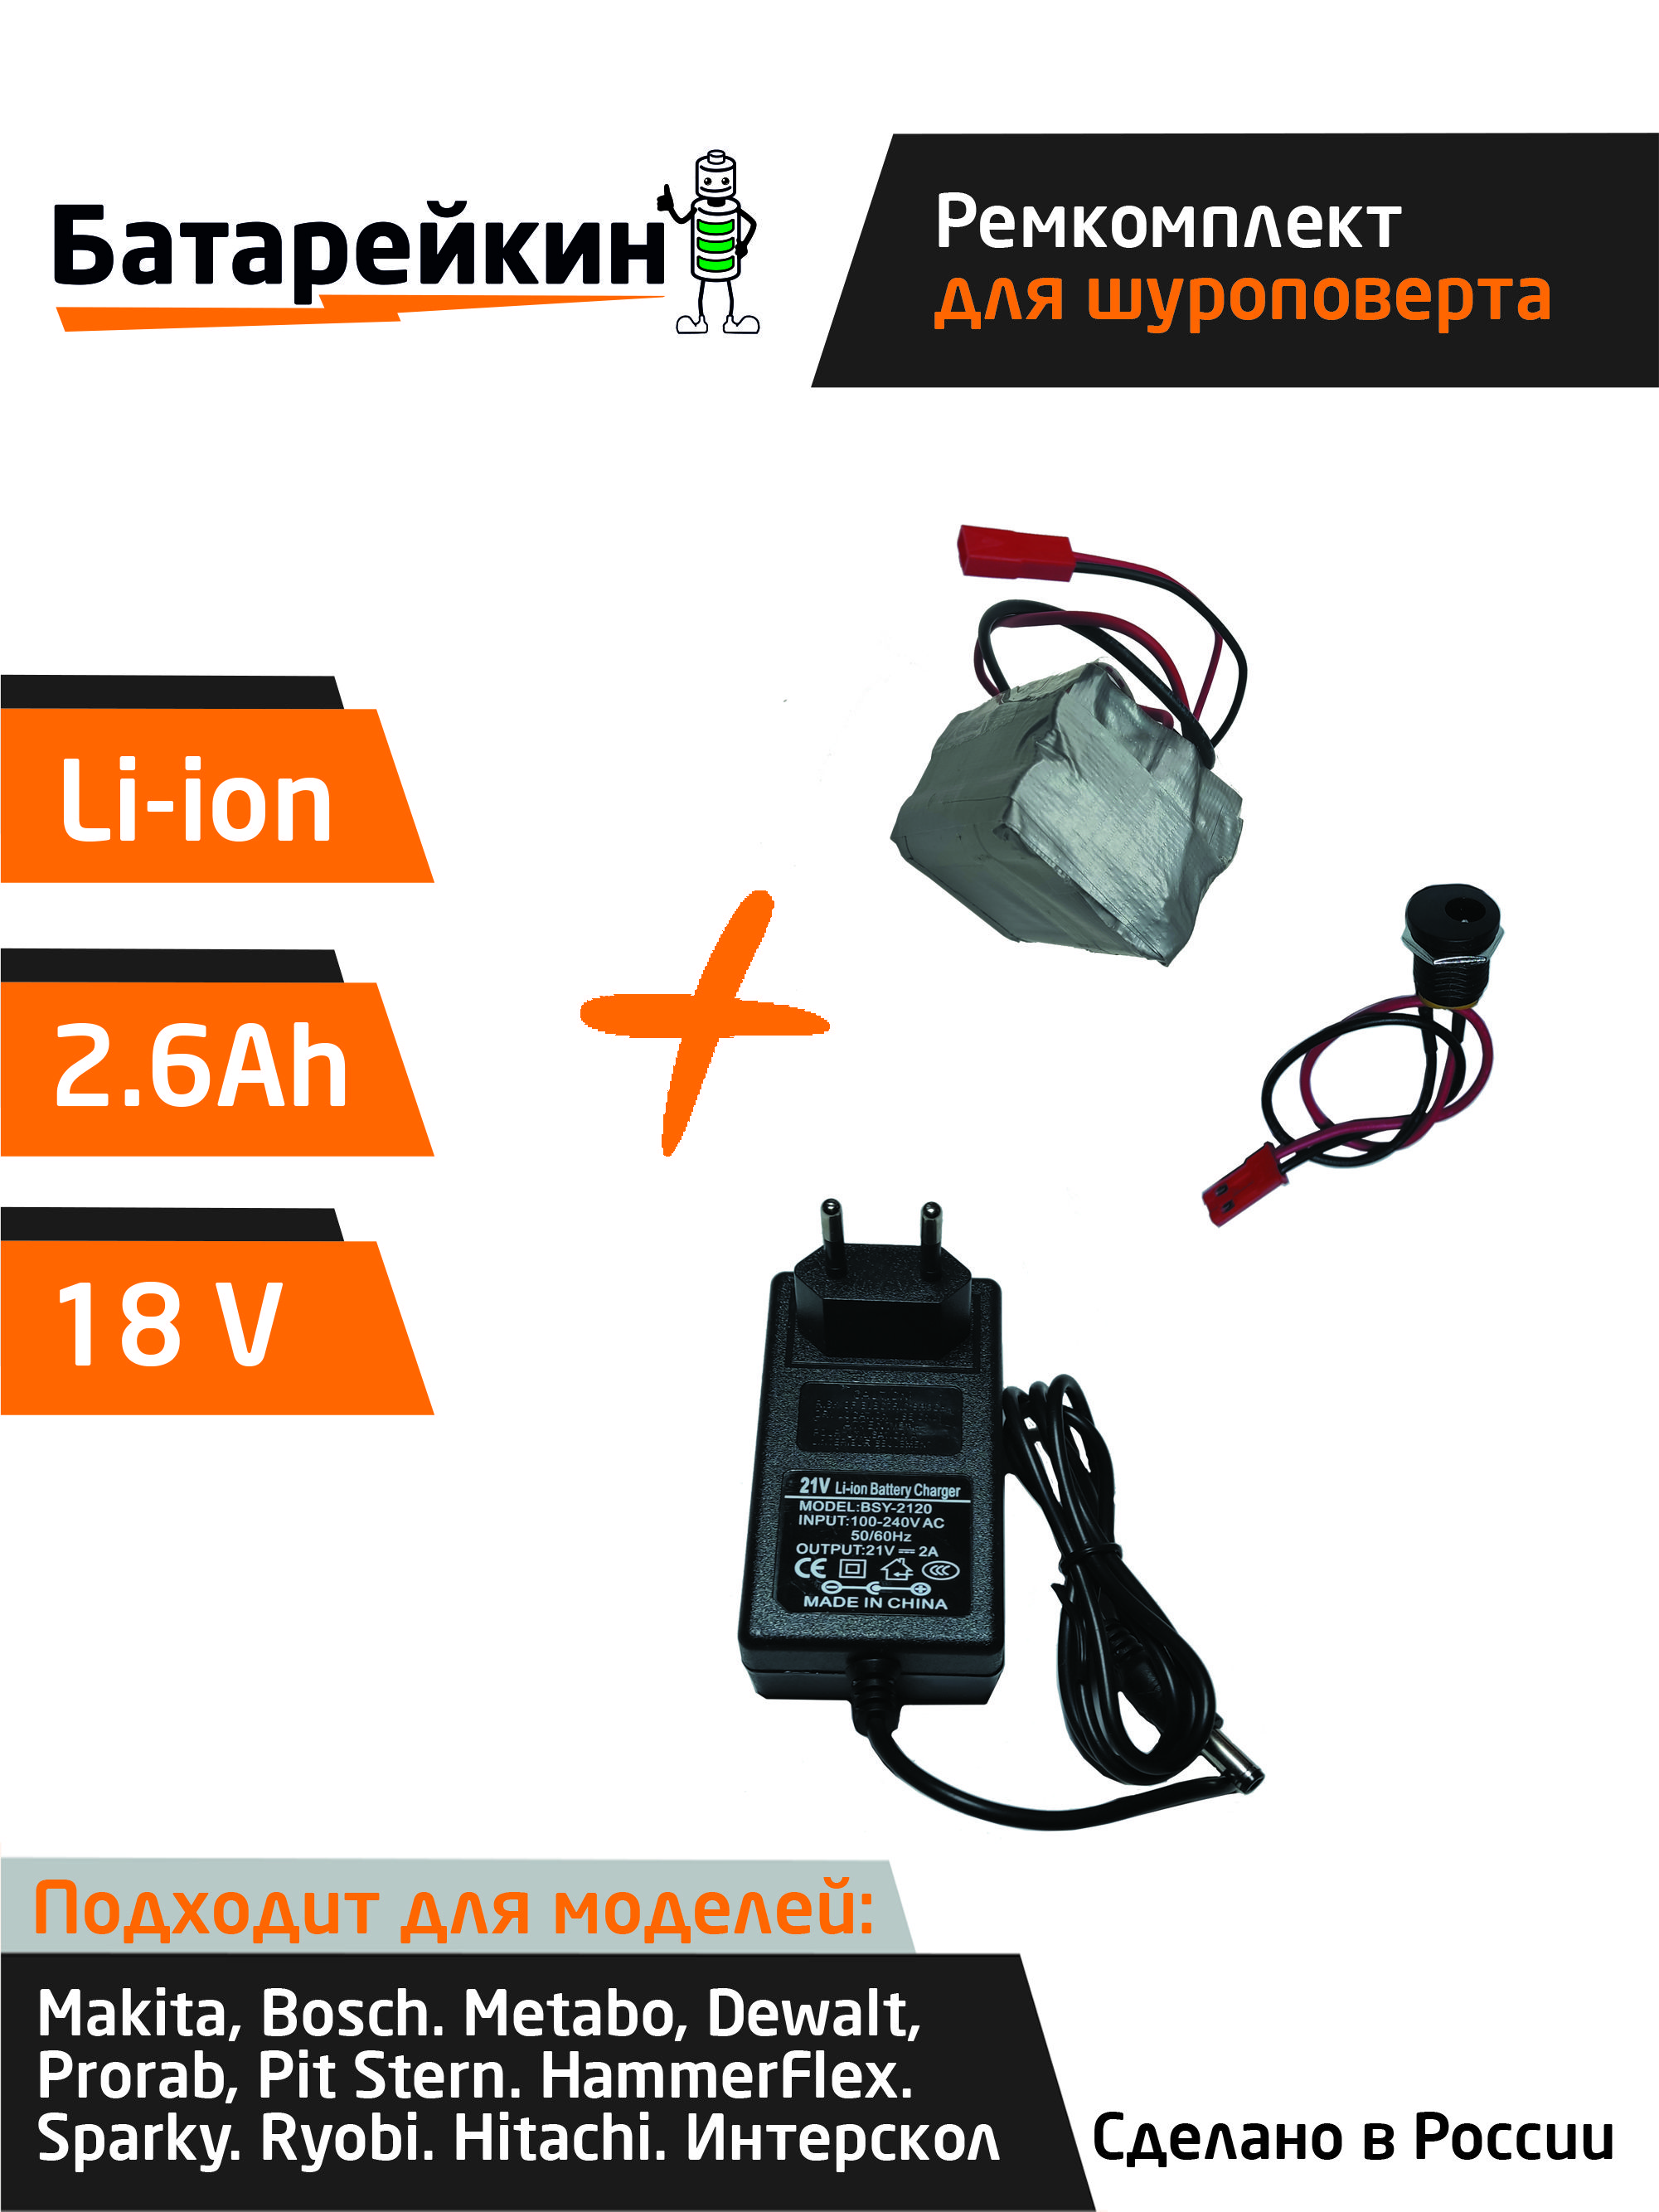 Набор S5 Батарейкин для перевода батареи шуруповерта на Li-ion и зарядное устройство